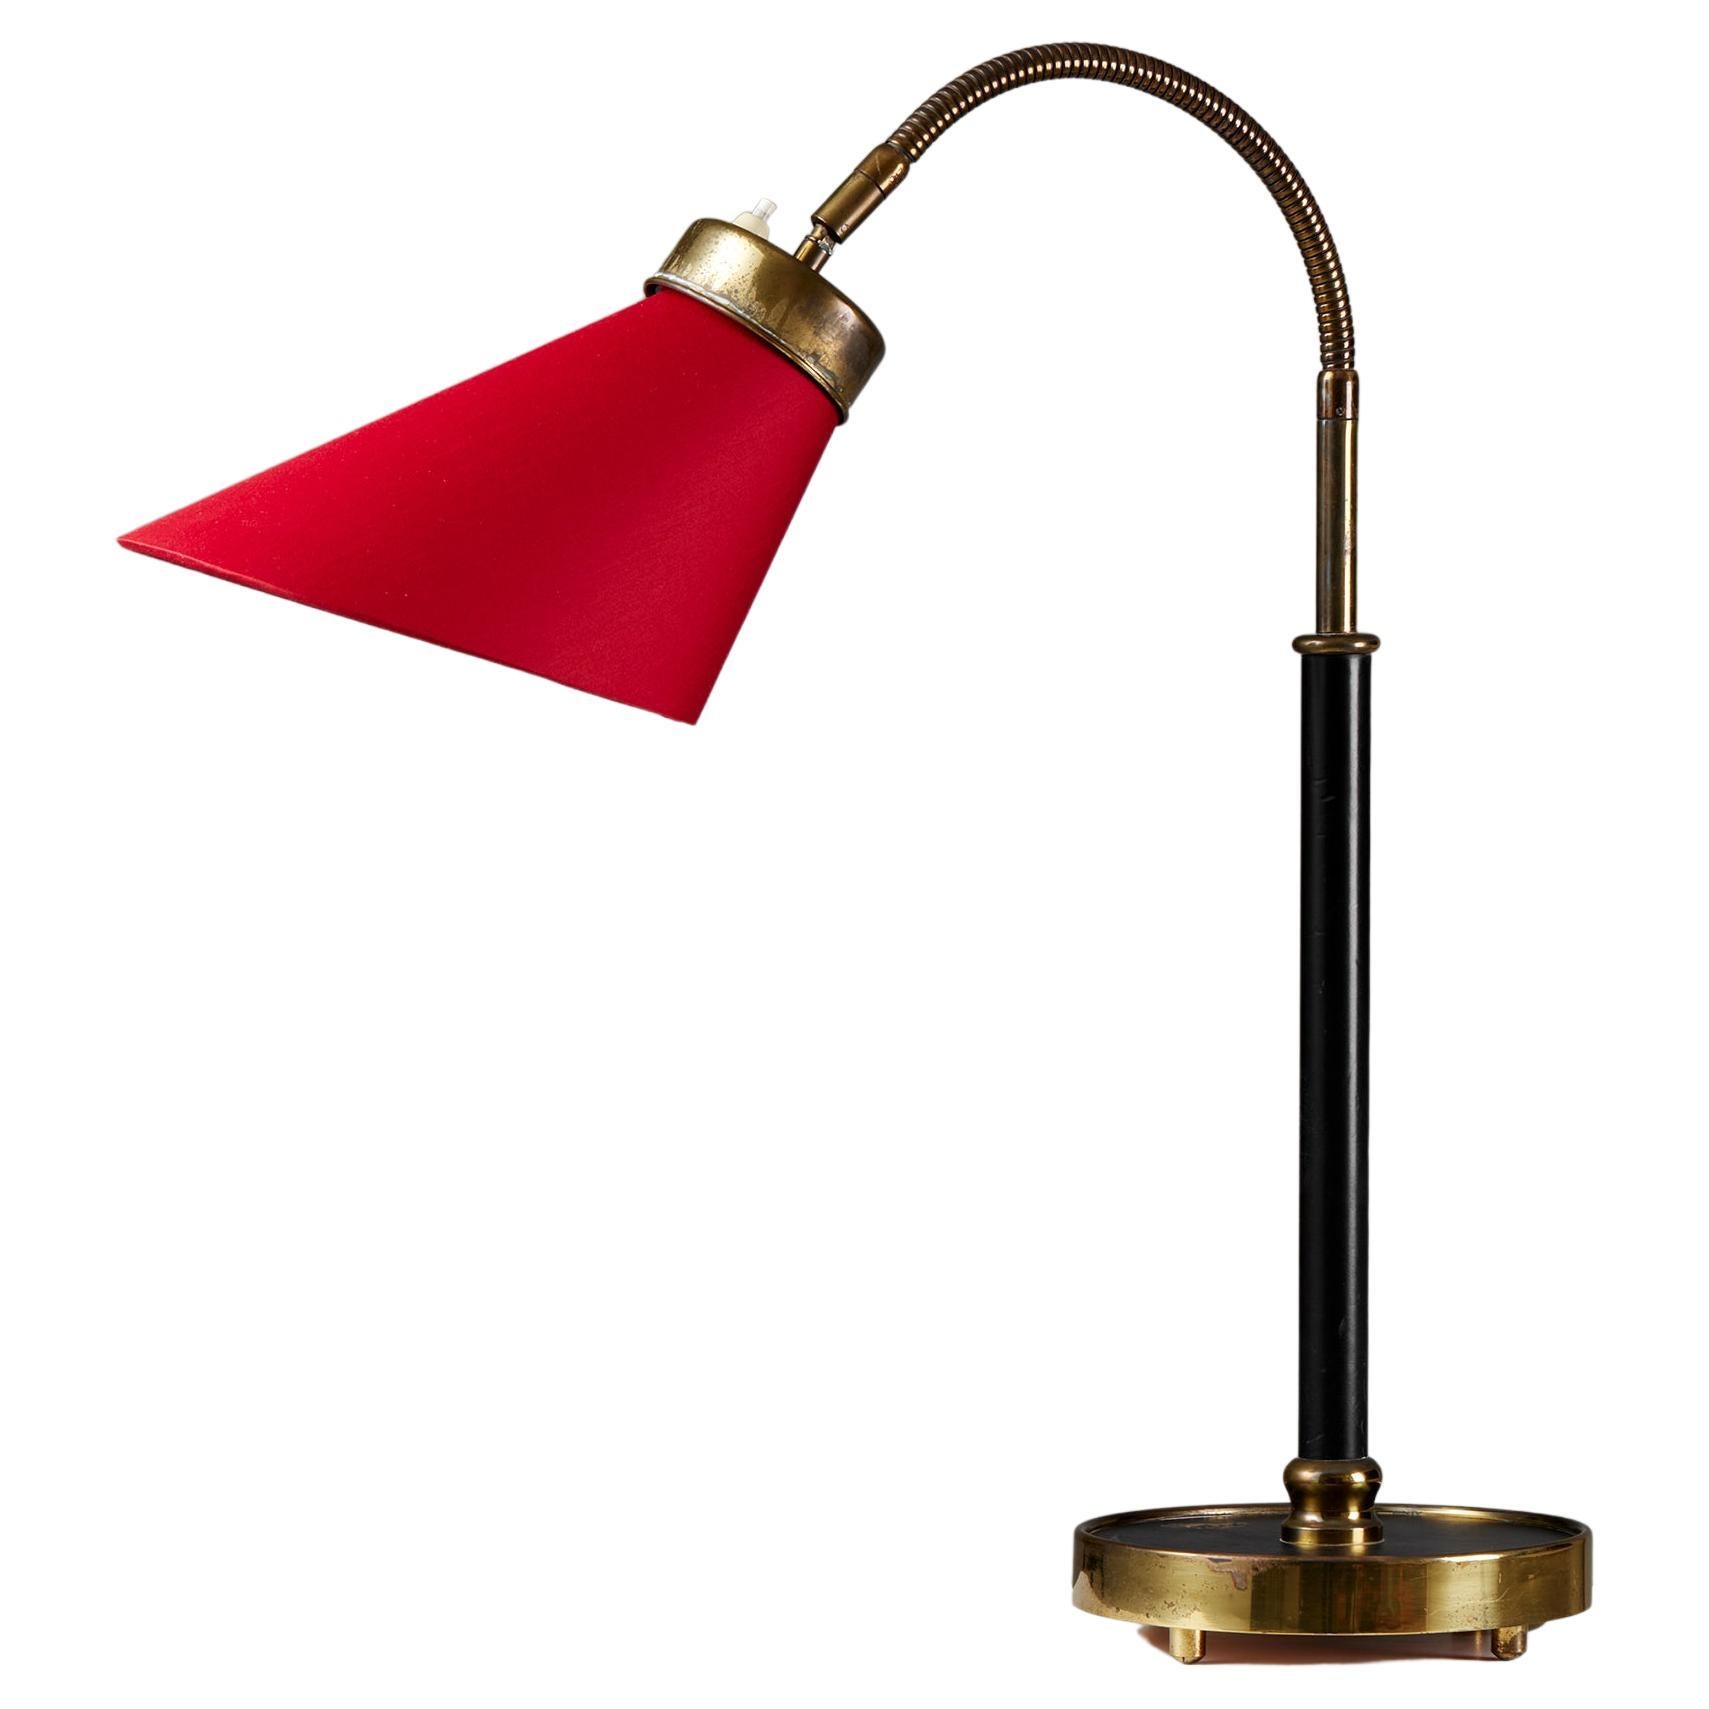 Lampe de bureau modèle 2434 conçue par Josef Frank pour Svenskt Tenn, Suède, 1939 rouge